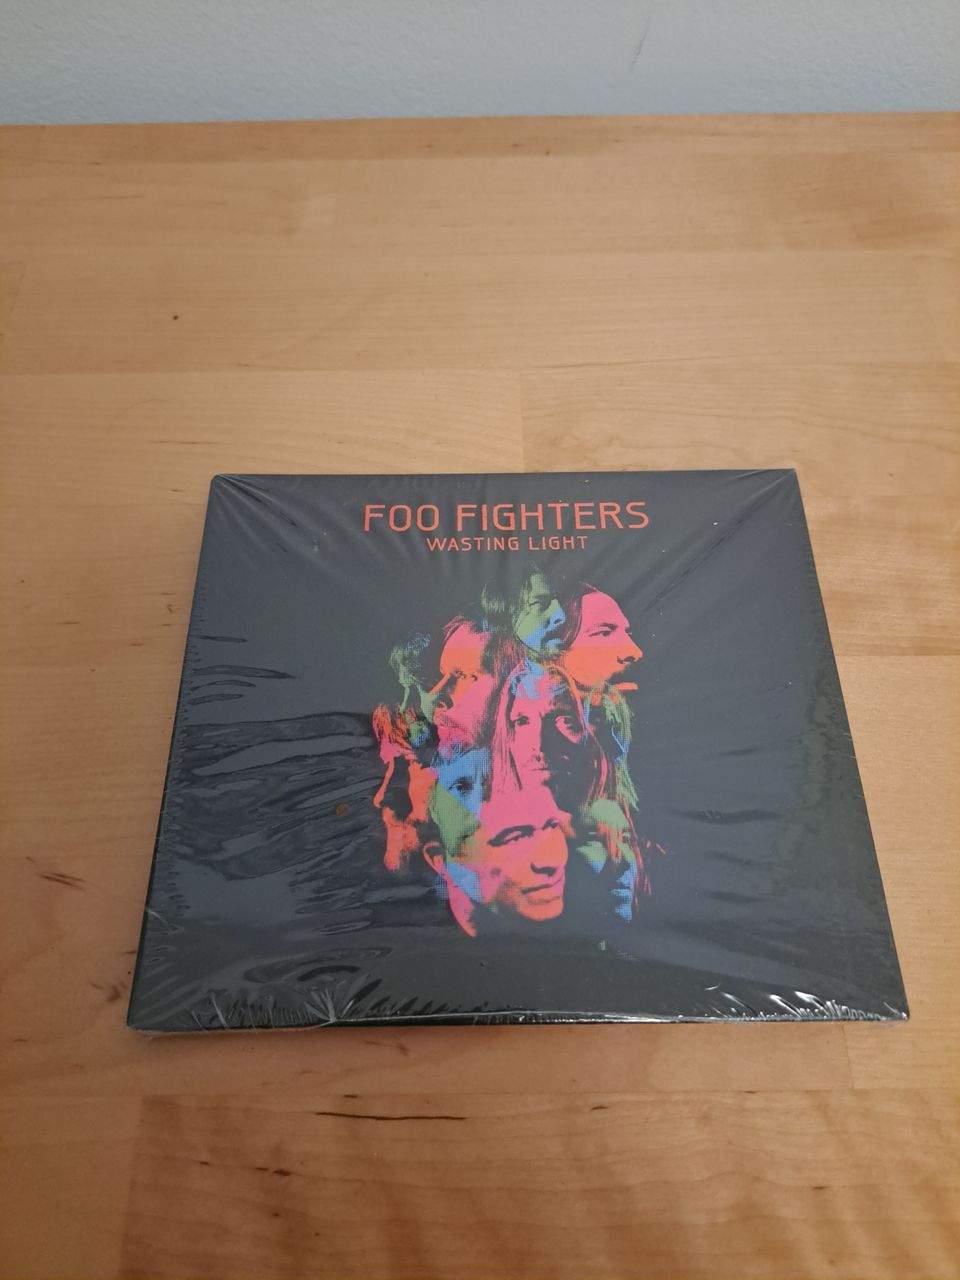 Foo fighters - Wasting light - CD - UUSI